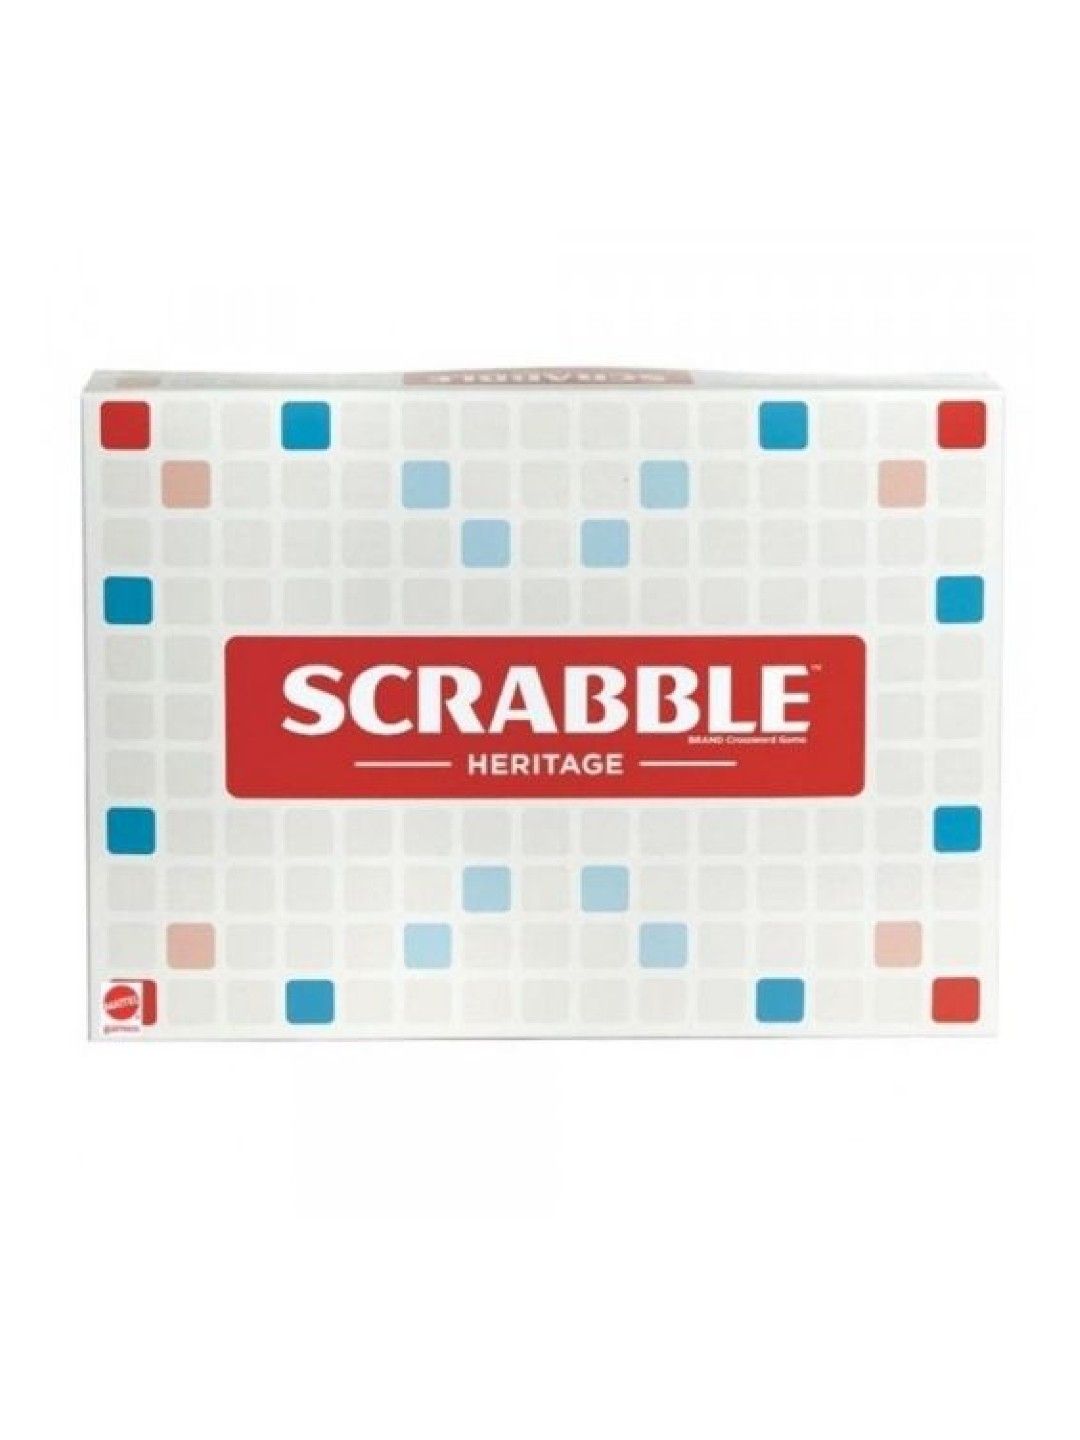 Mattel Games Scrabble Deluxe Heritage Board Game